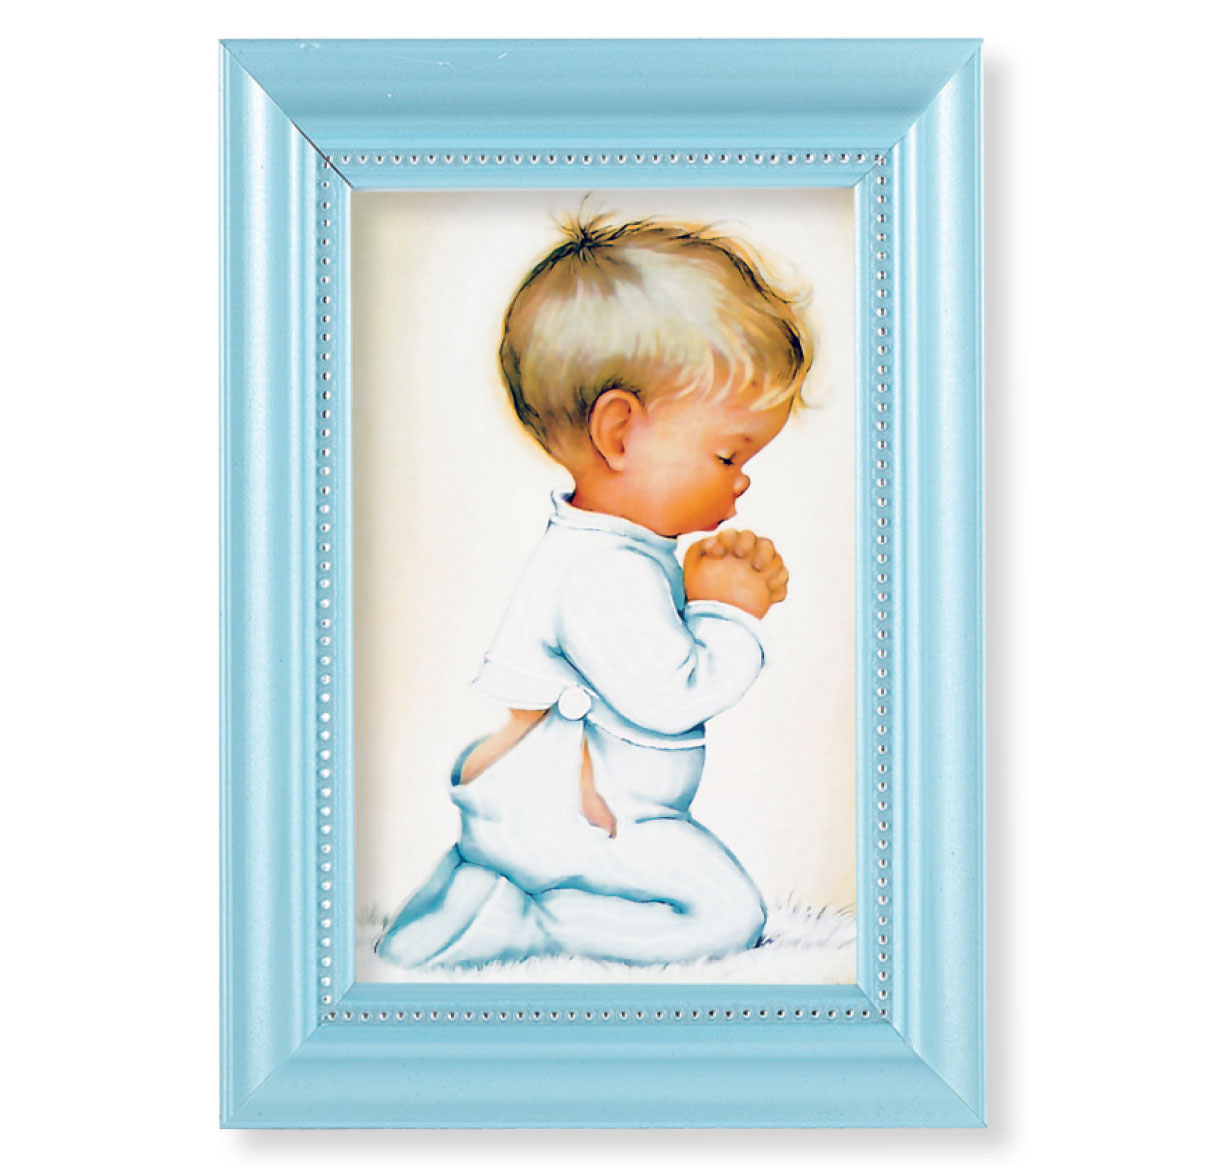 Print Praying Boy 4 x 6 inch Pearlized Blue Framed